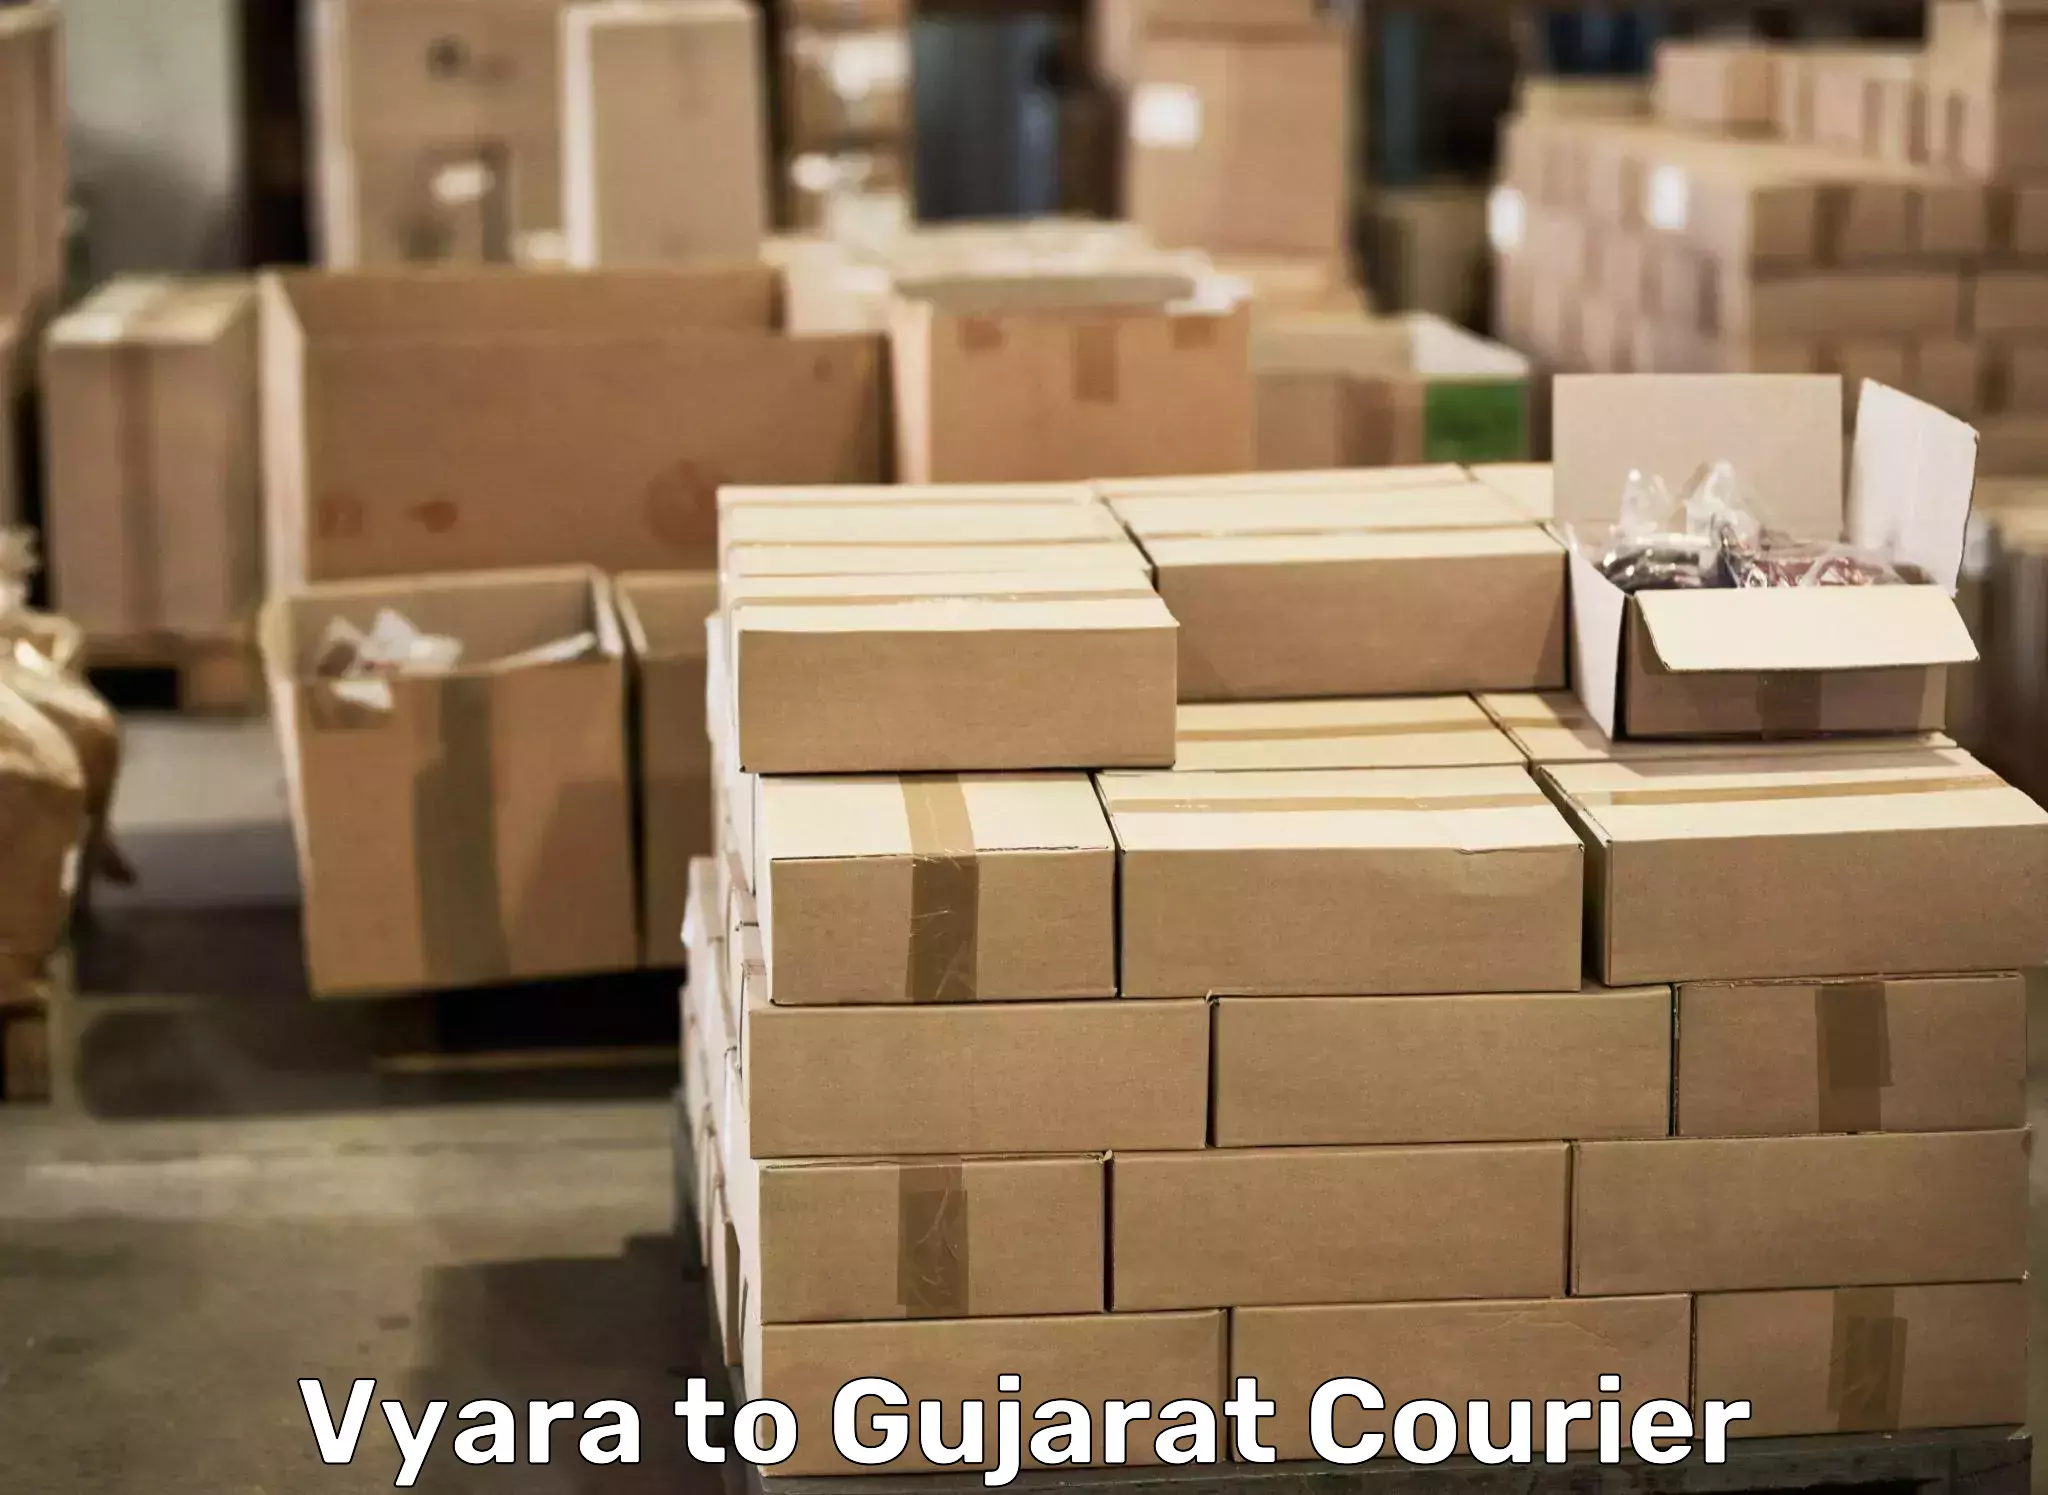 Moving and packing experts Vyara to Panchmahal